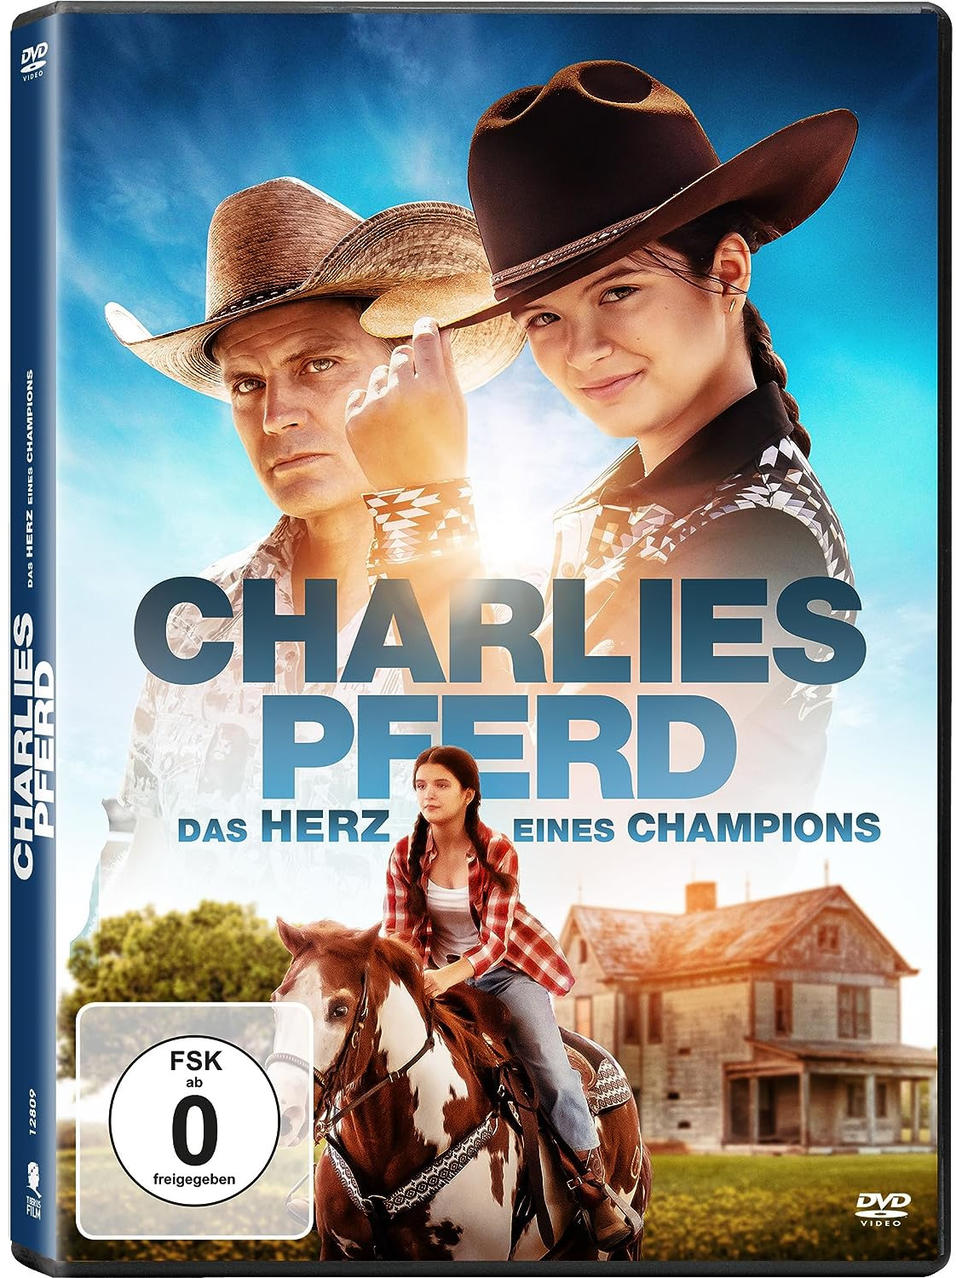 Das - Herz eines Charlies DVD Champions Pferd